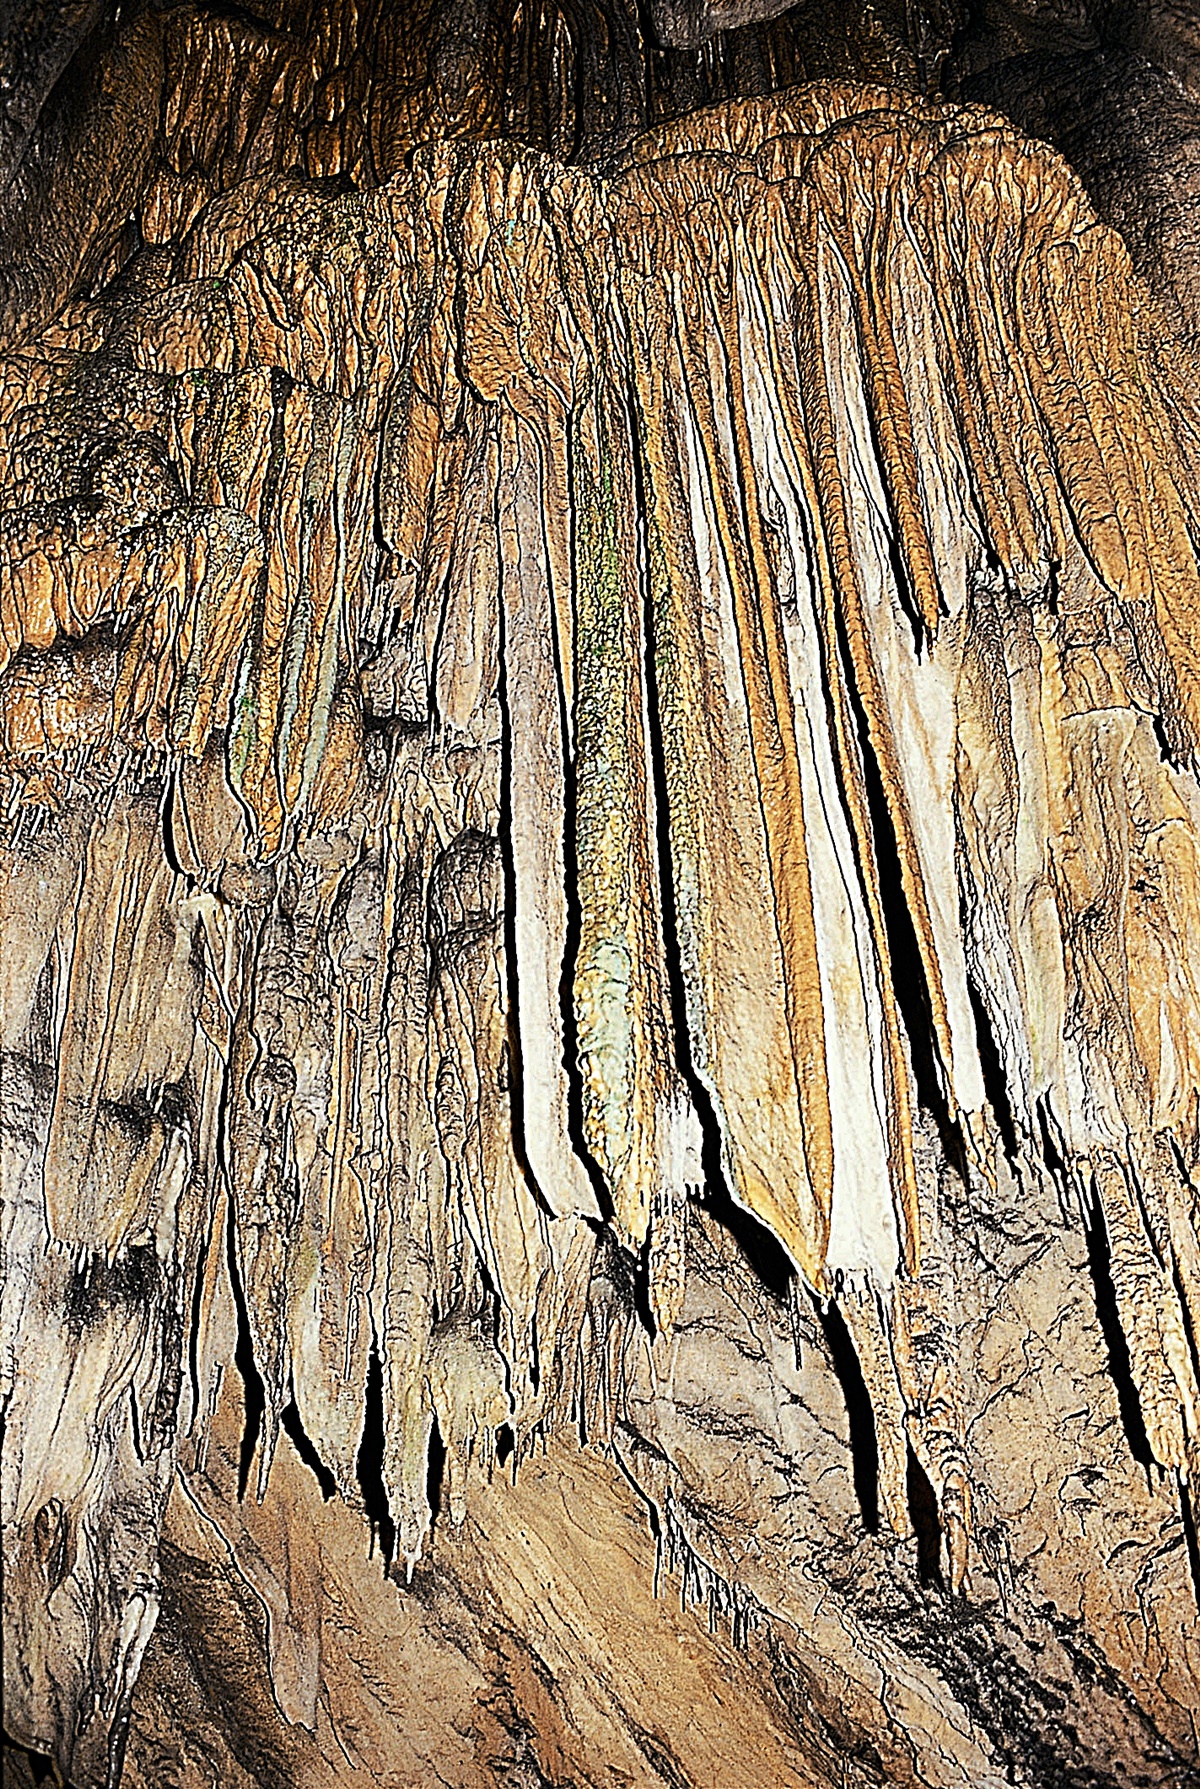 유달리 물이 많은 동굴. 종유석과 석순이 잘 발달해 있다. 